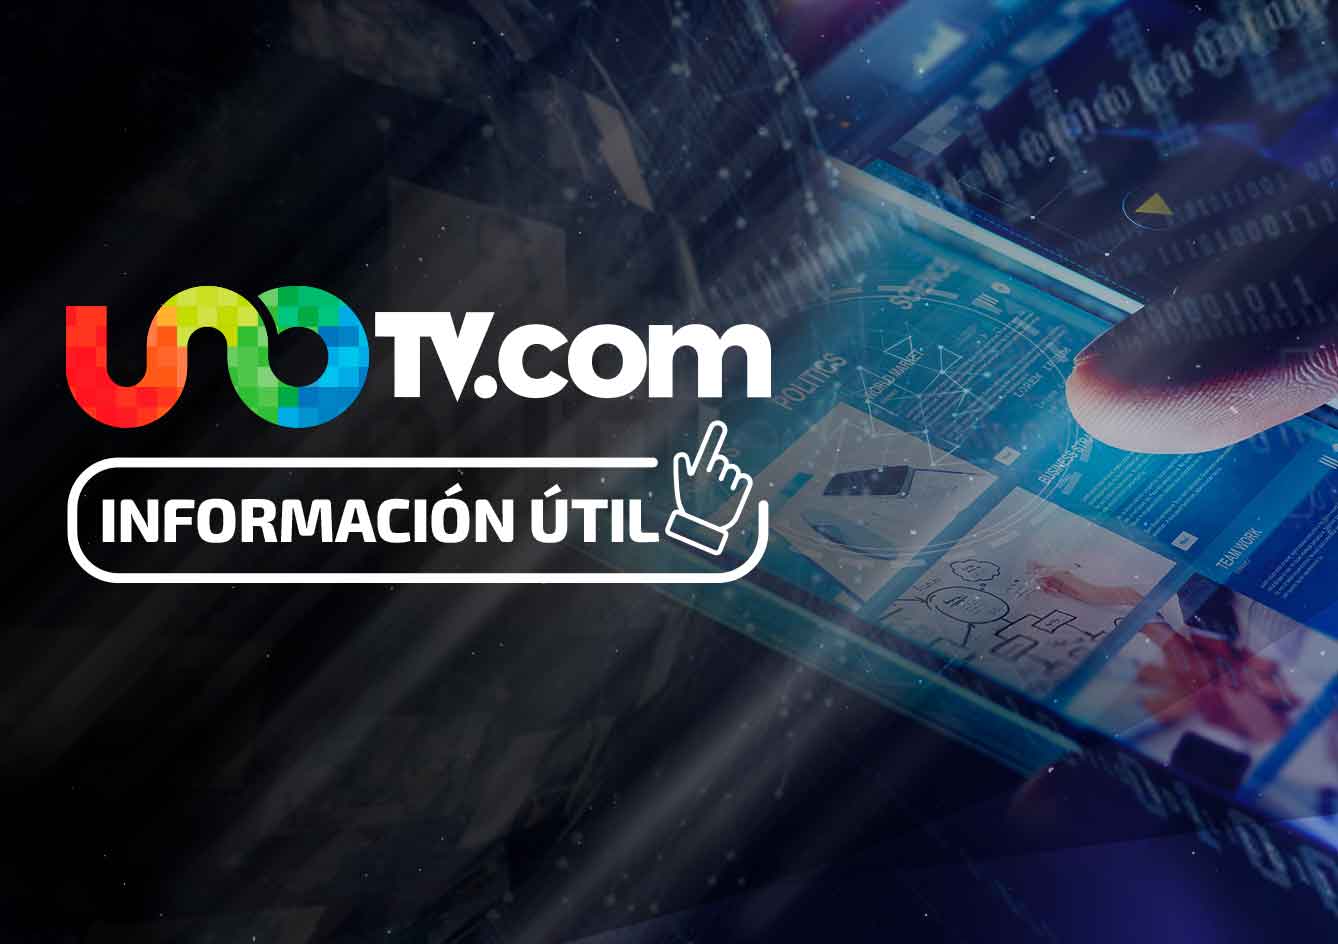 Así reciben usuarios a este nuevo servicio de internet en México